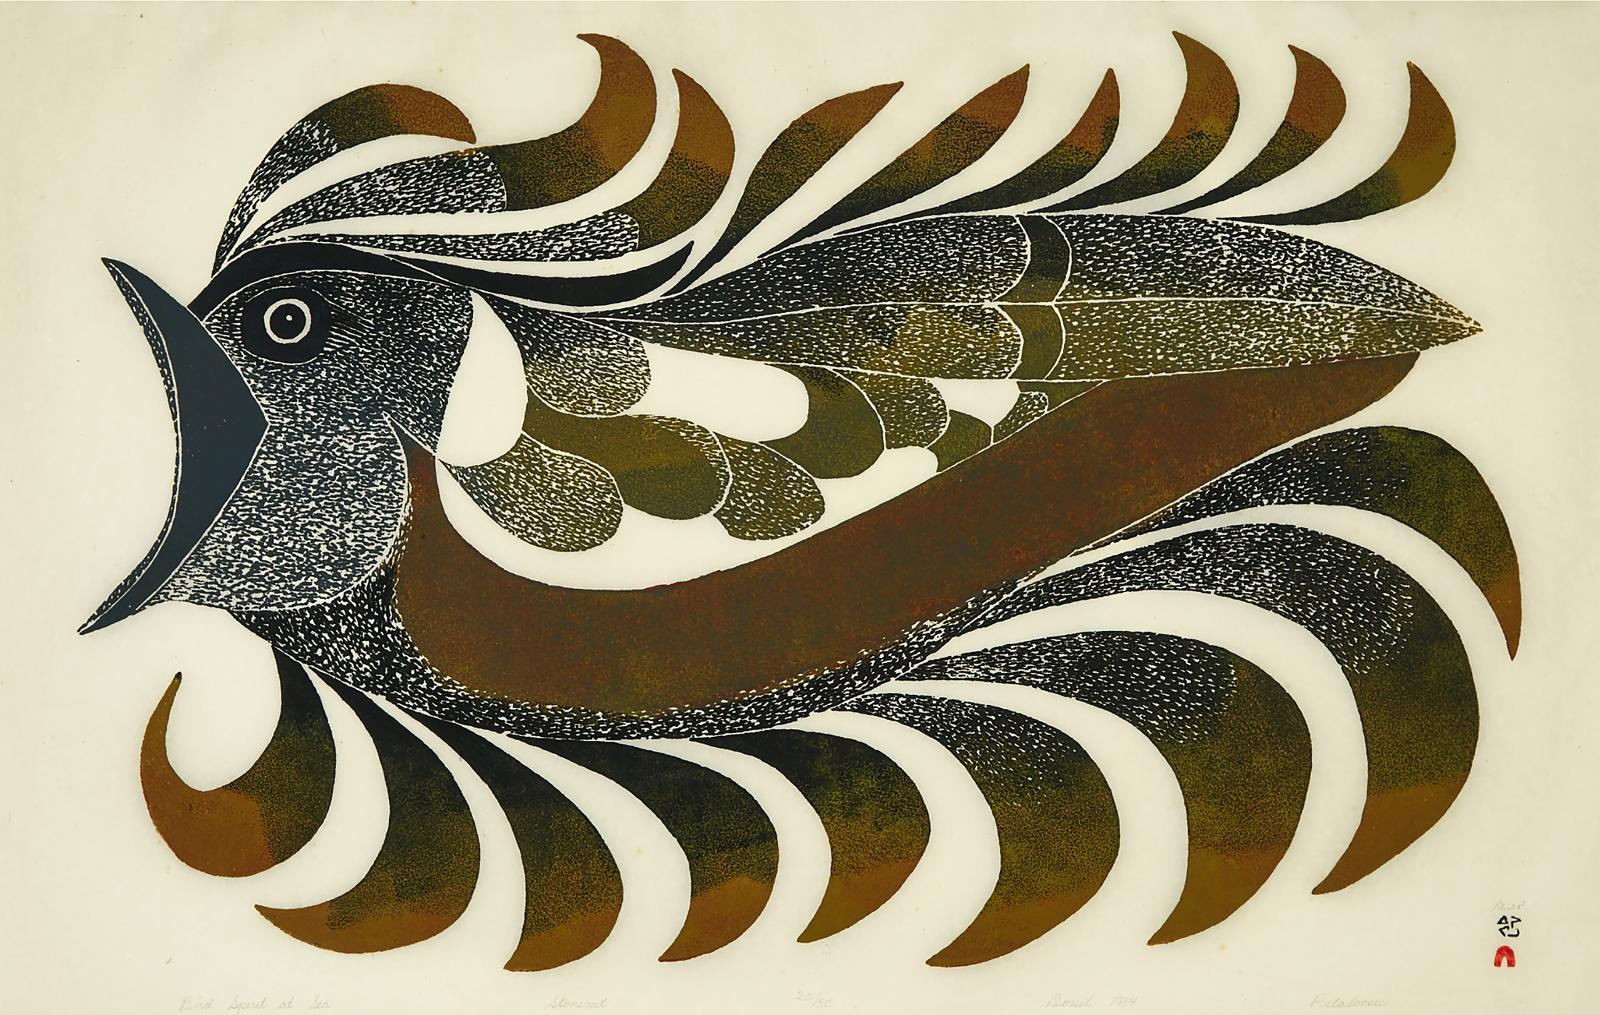 Pitaloosie Saila (1942-2021) - Bird Spirit At Sea